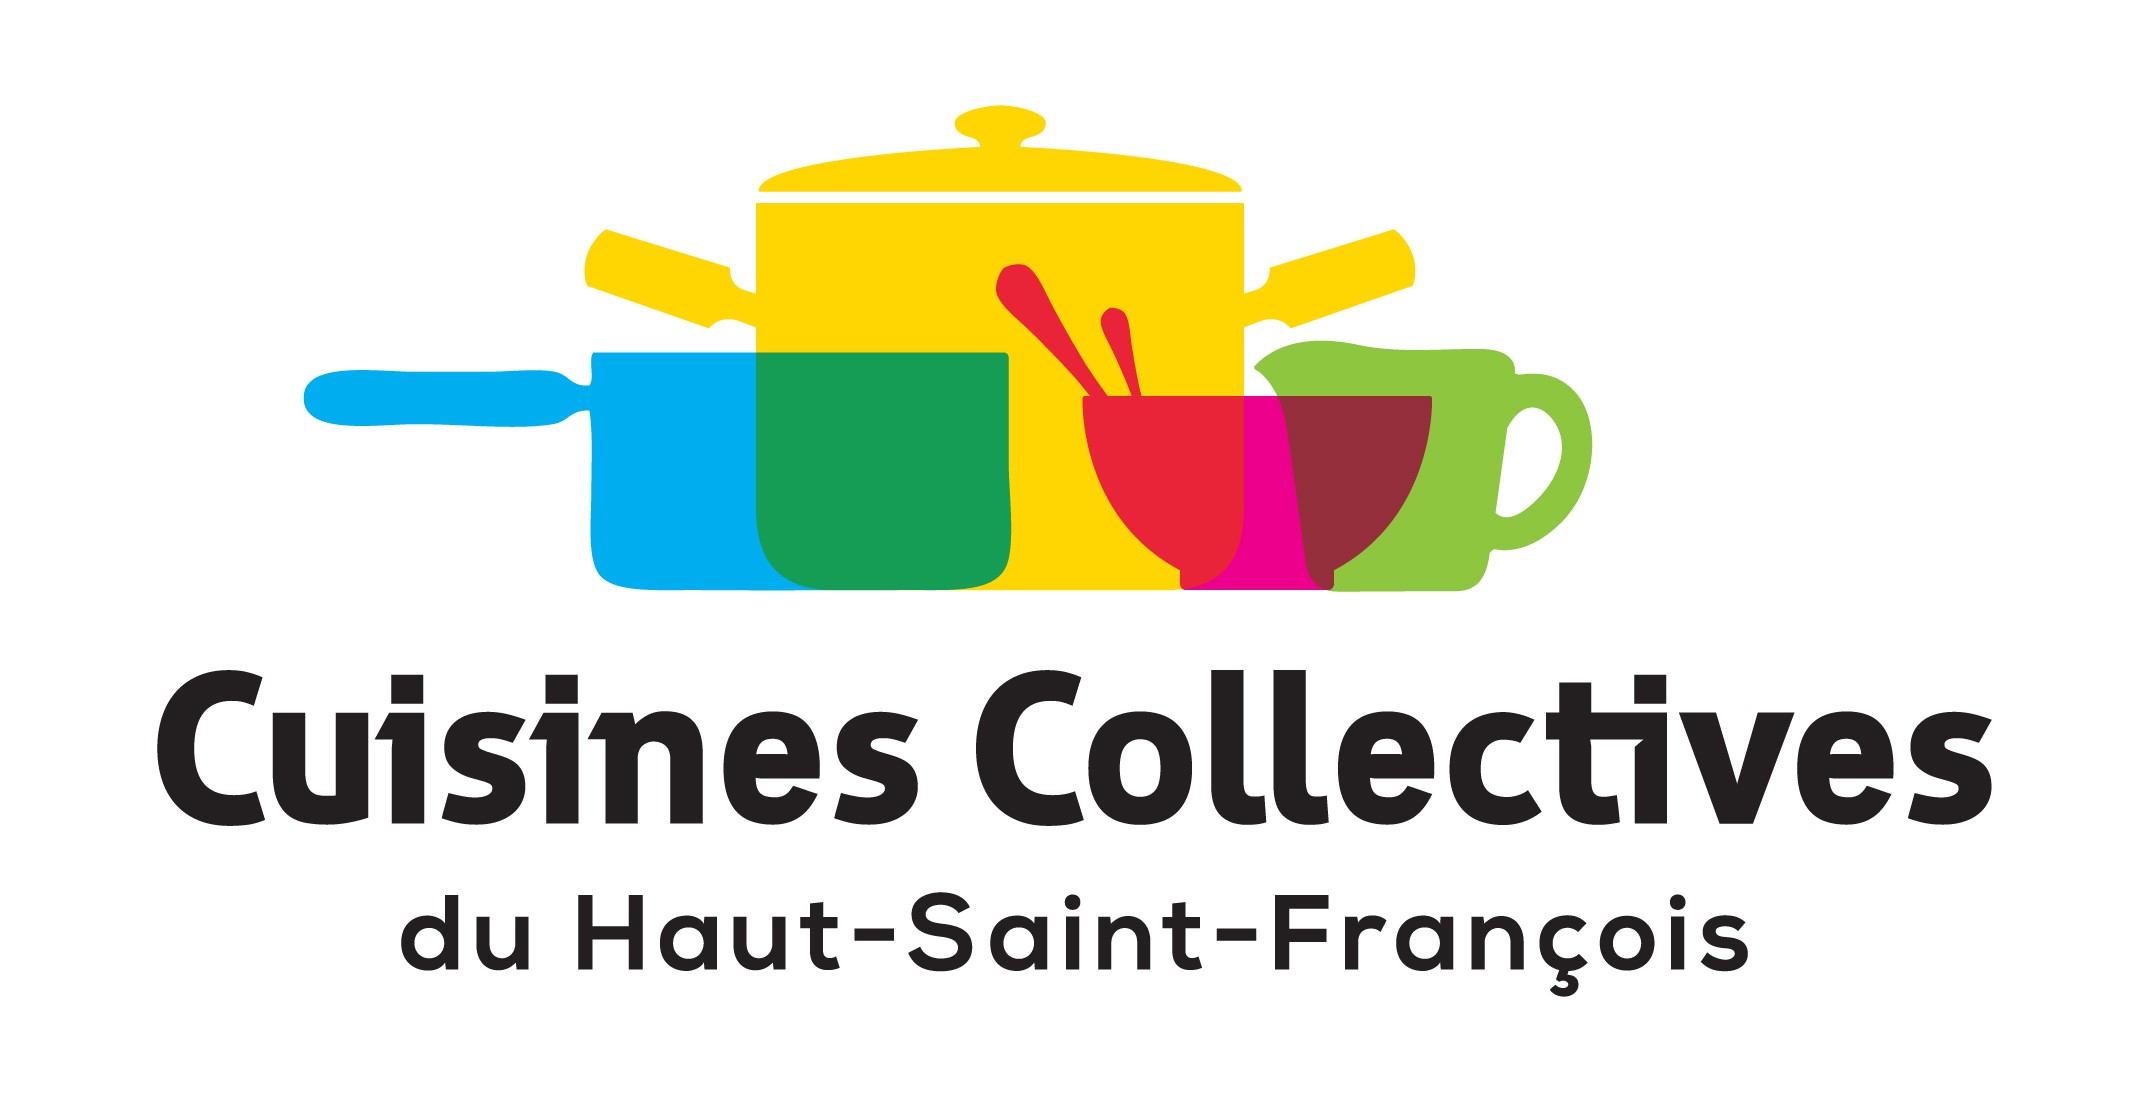 Cuisines Collectives du Haut-Saint-François